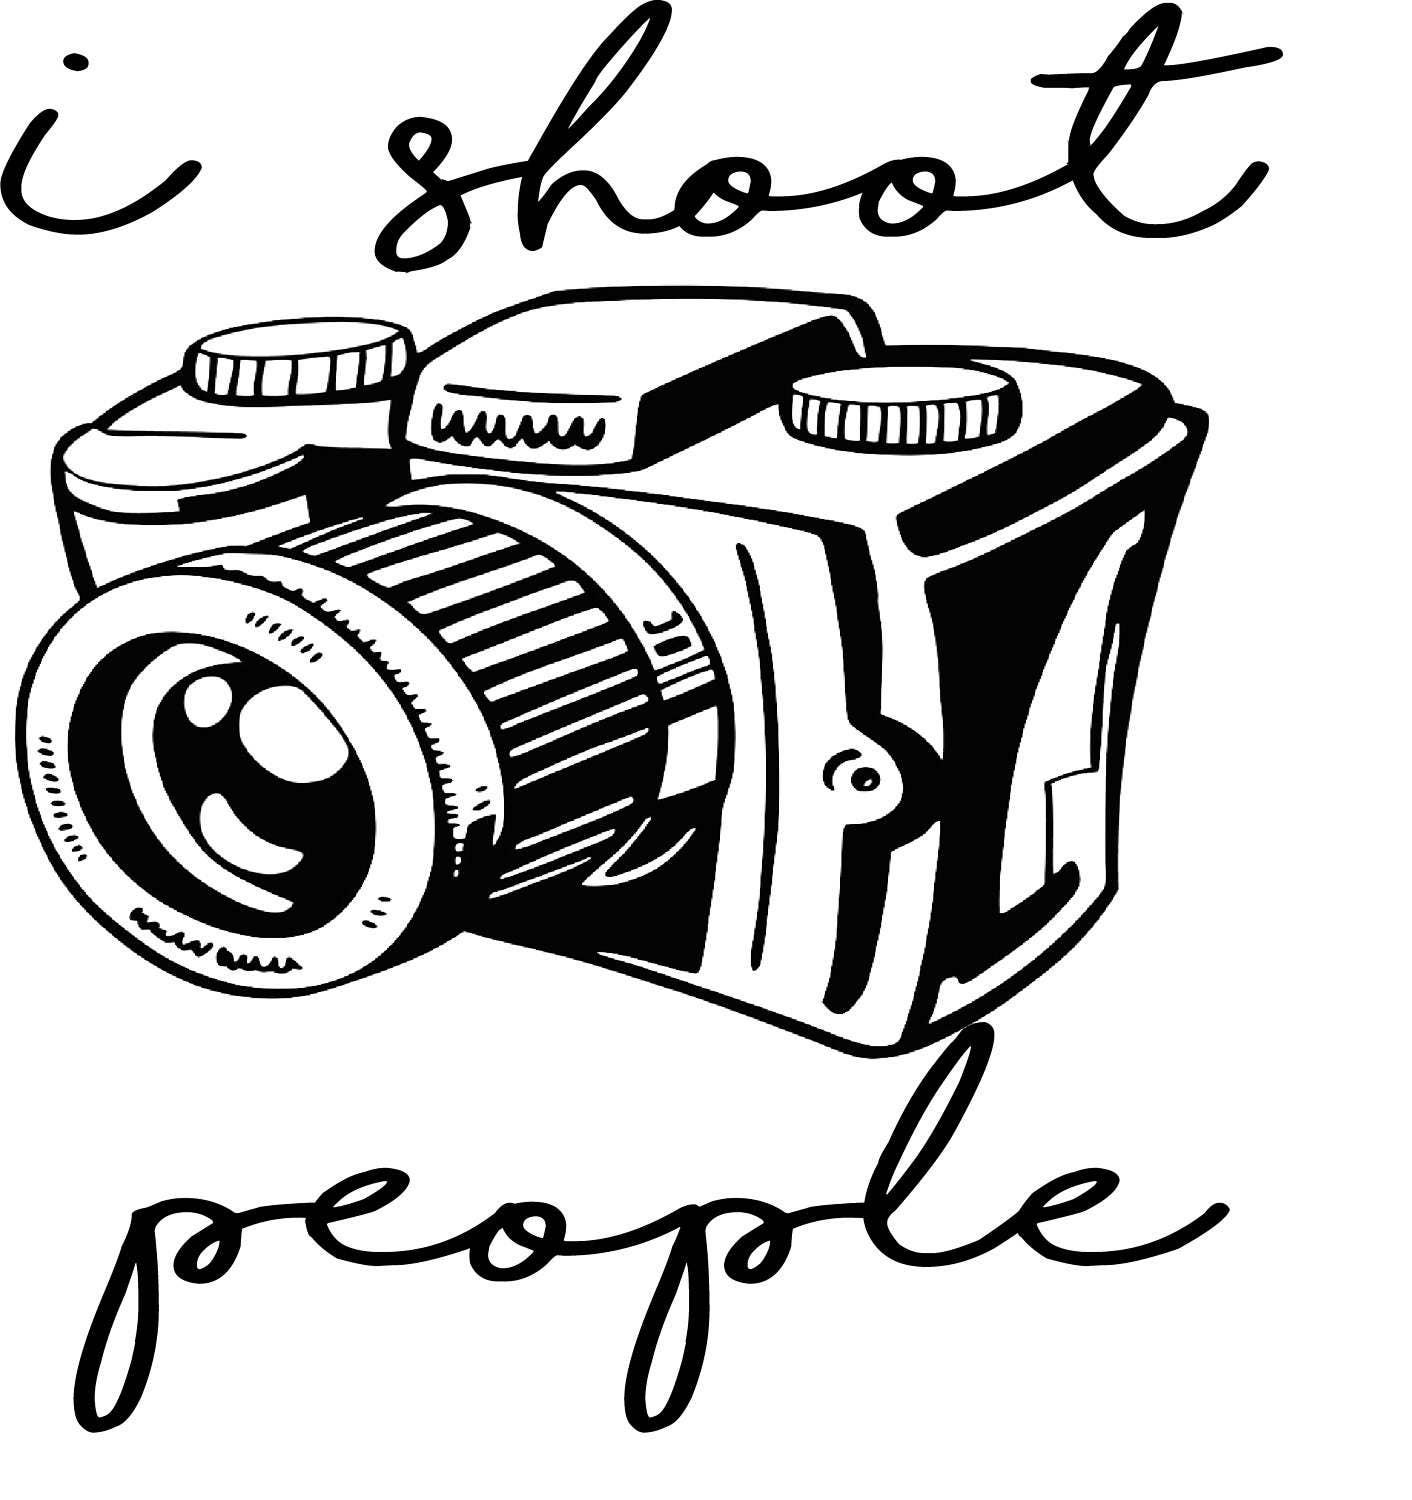 Download I Shoot People Camera SVG Digital Download